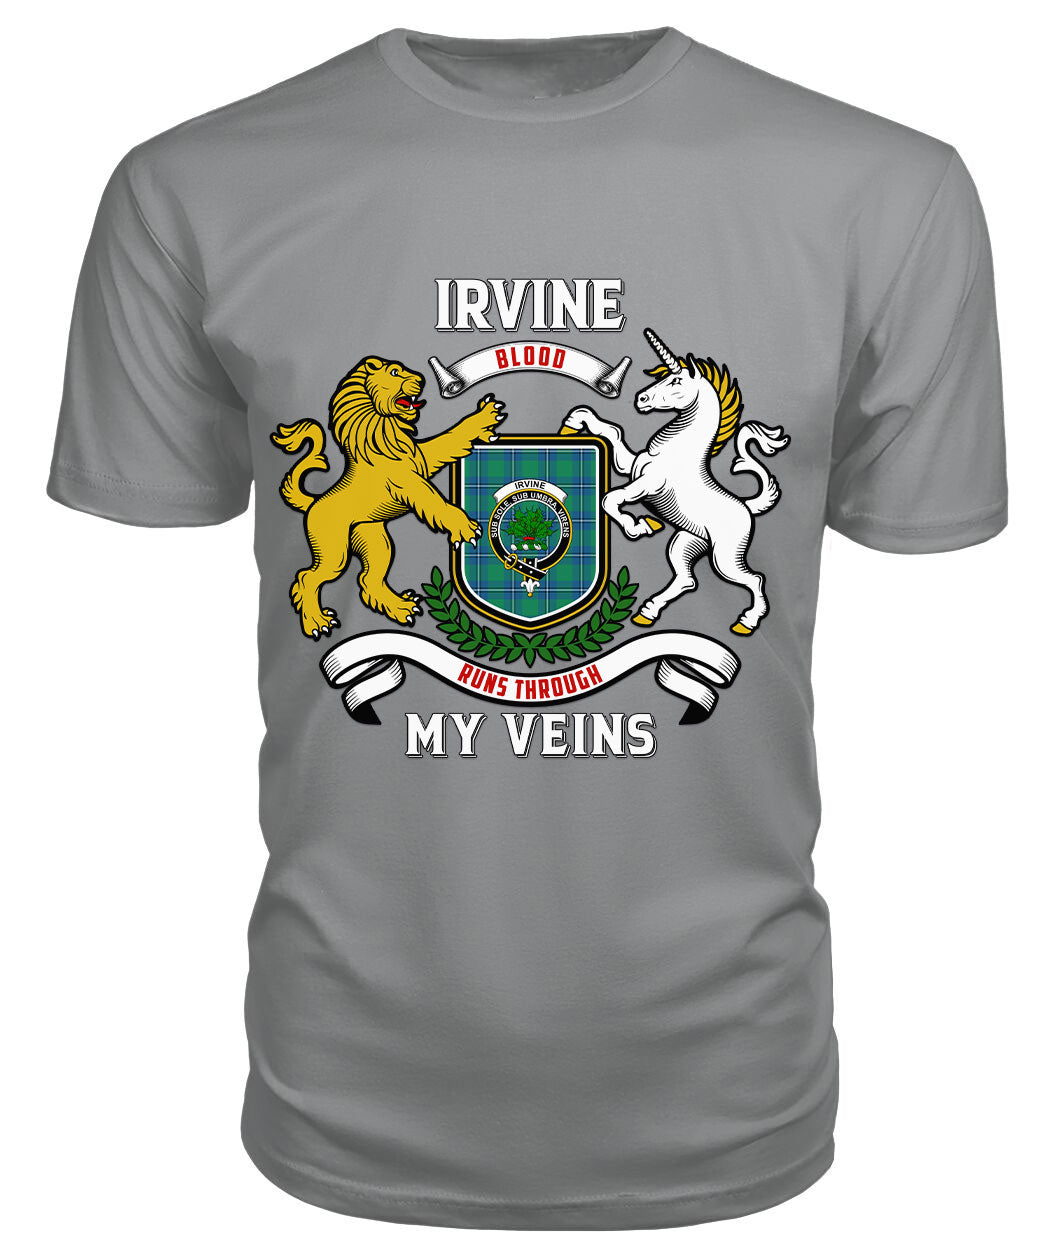 Irvine Ancient Tartan Crest 2D T-shirt - Blood Runs Through My Veins Style